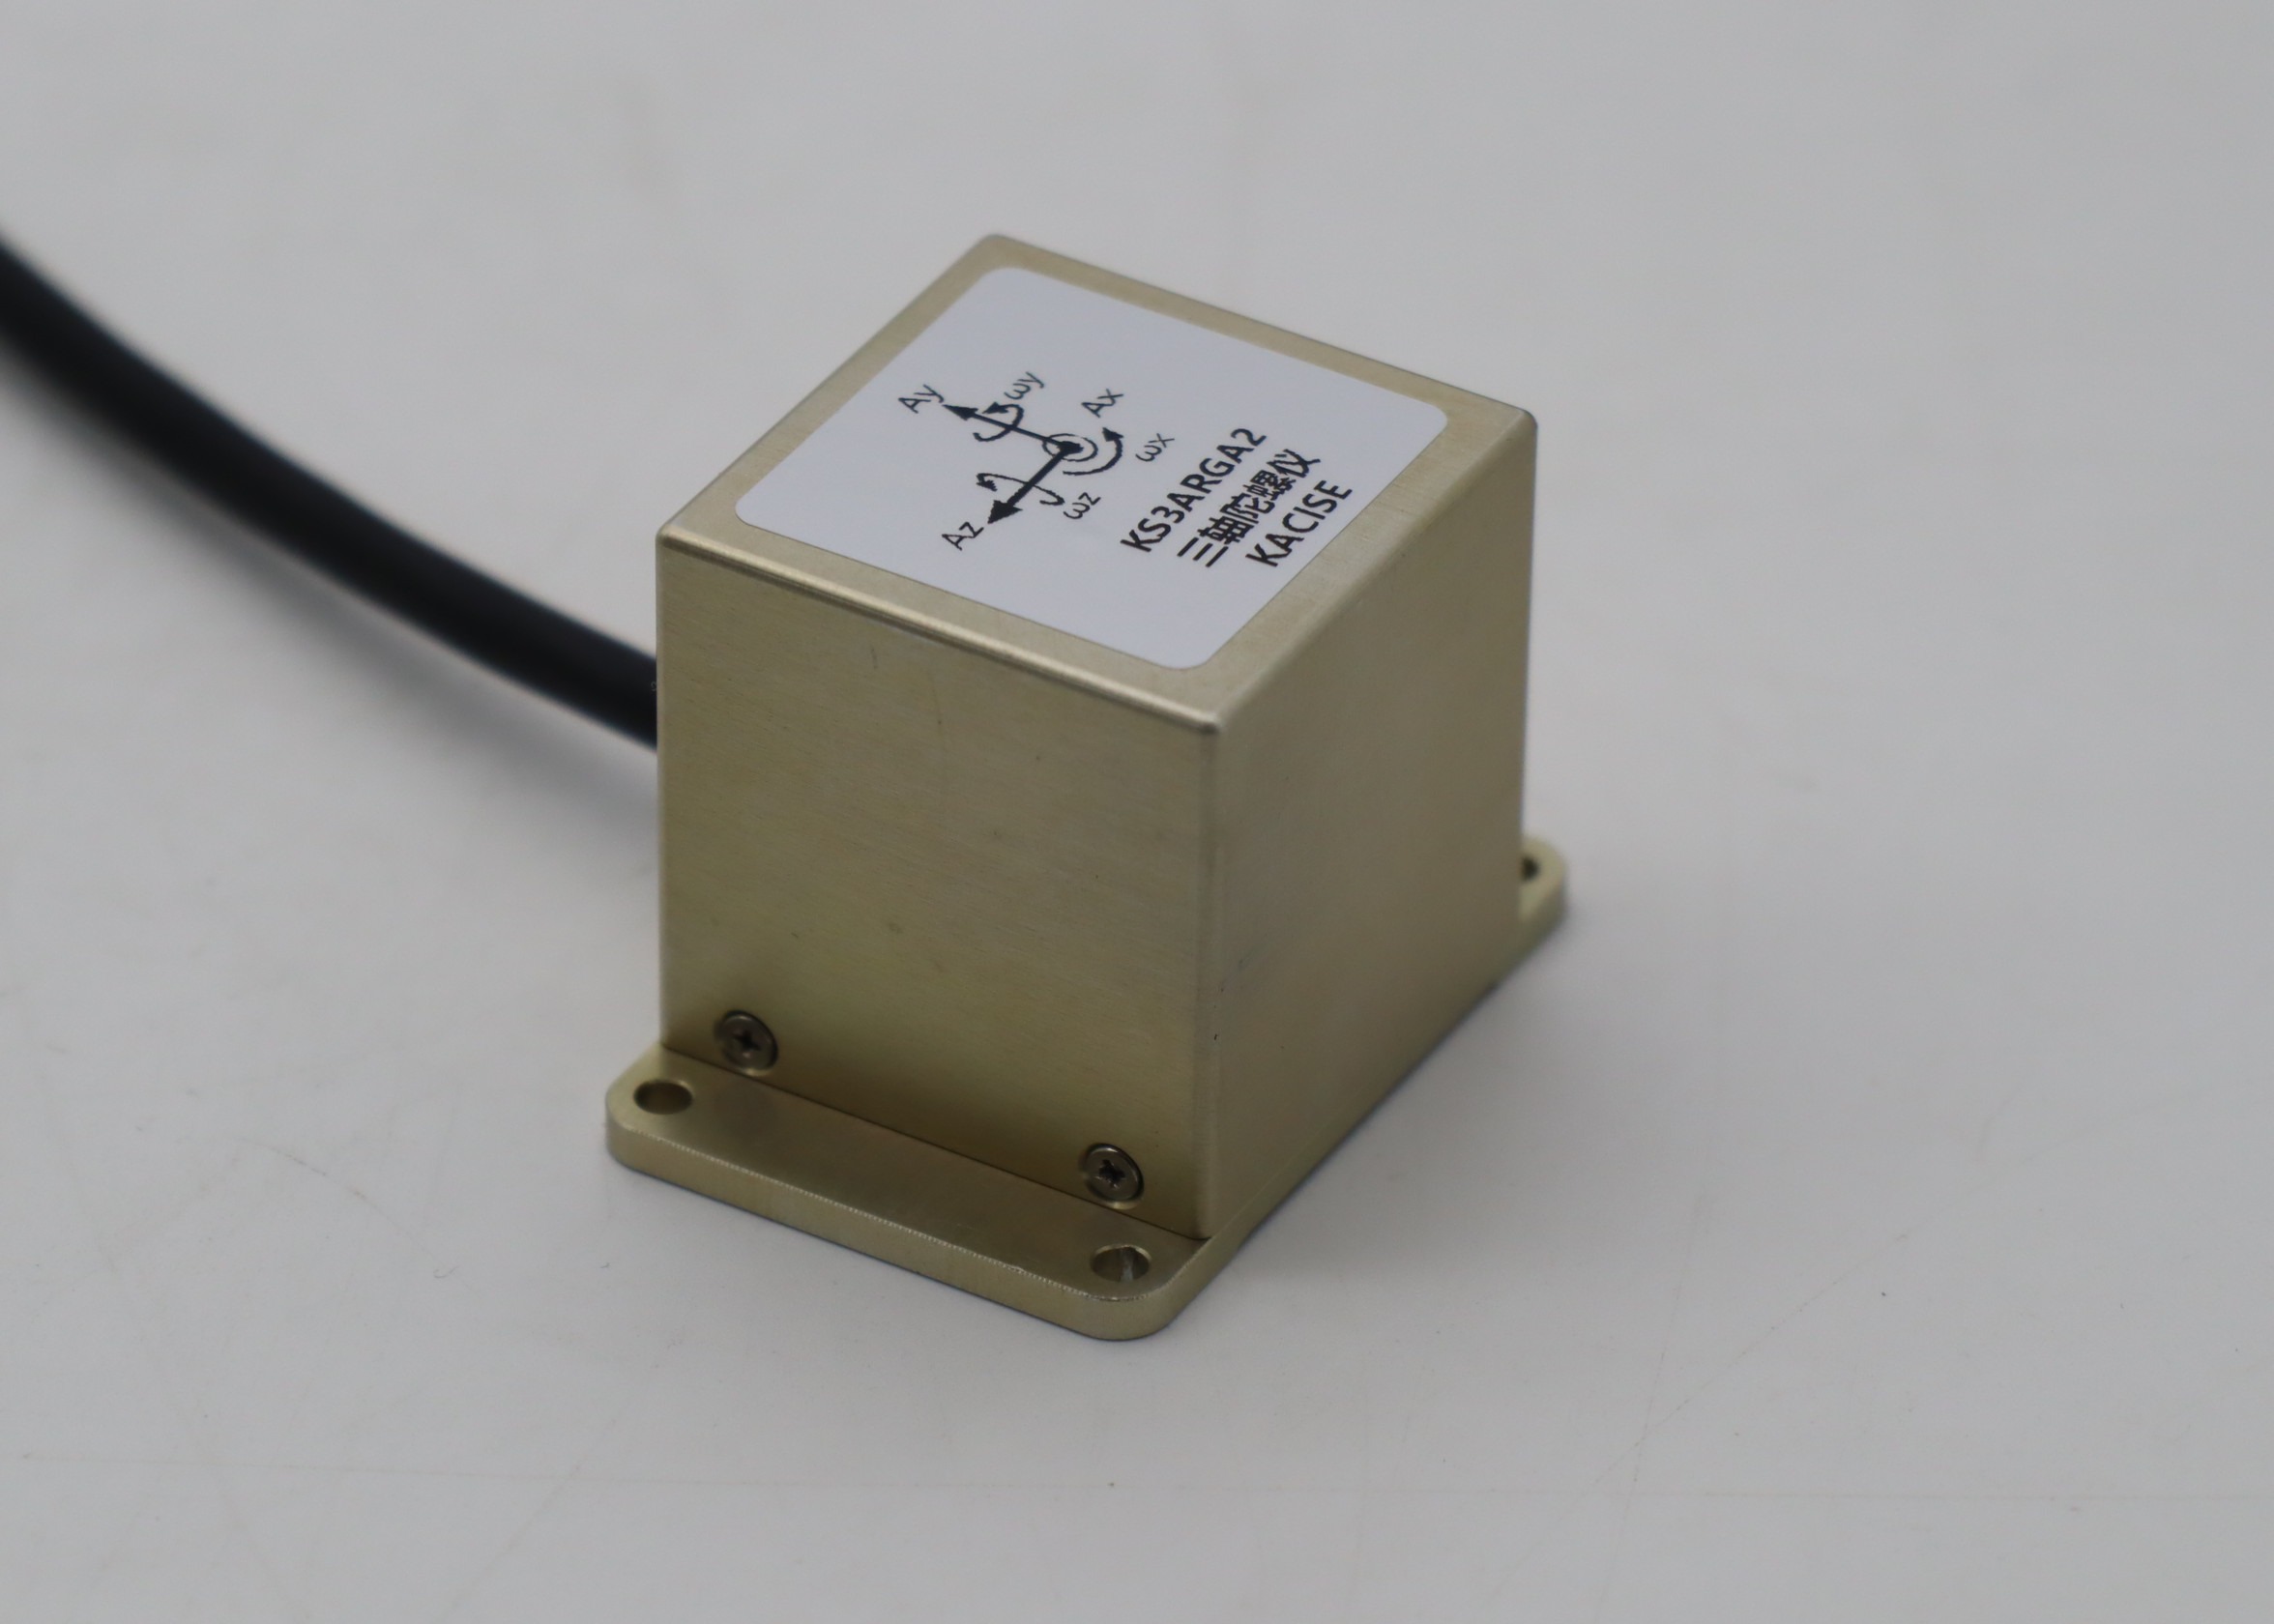 Sensore giroscopico MEMS di uscita analogica di avvio rapido con tensione di offset di 1,65 ± 0,02 V